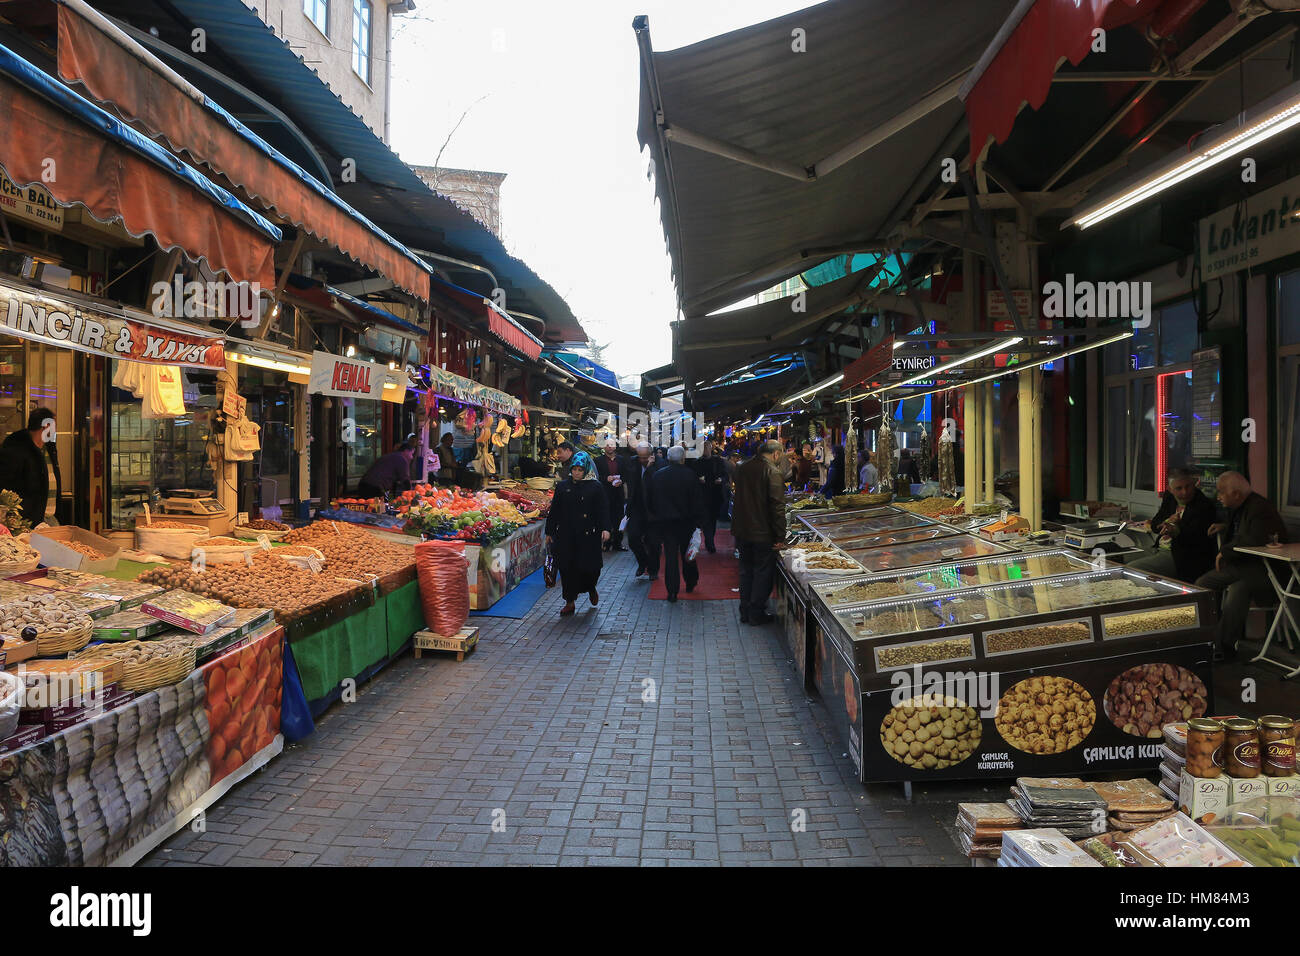 Bursa, Turquie - 23 Février 2016 : Les gens de marcher dans les légumes frais, les noix et les fruits se distingue sur le marché libre en Bursa Turquie Banque D'Images